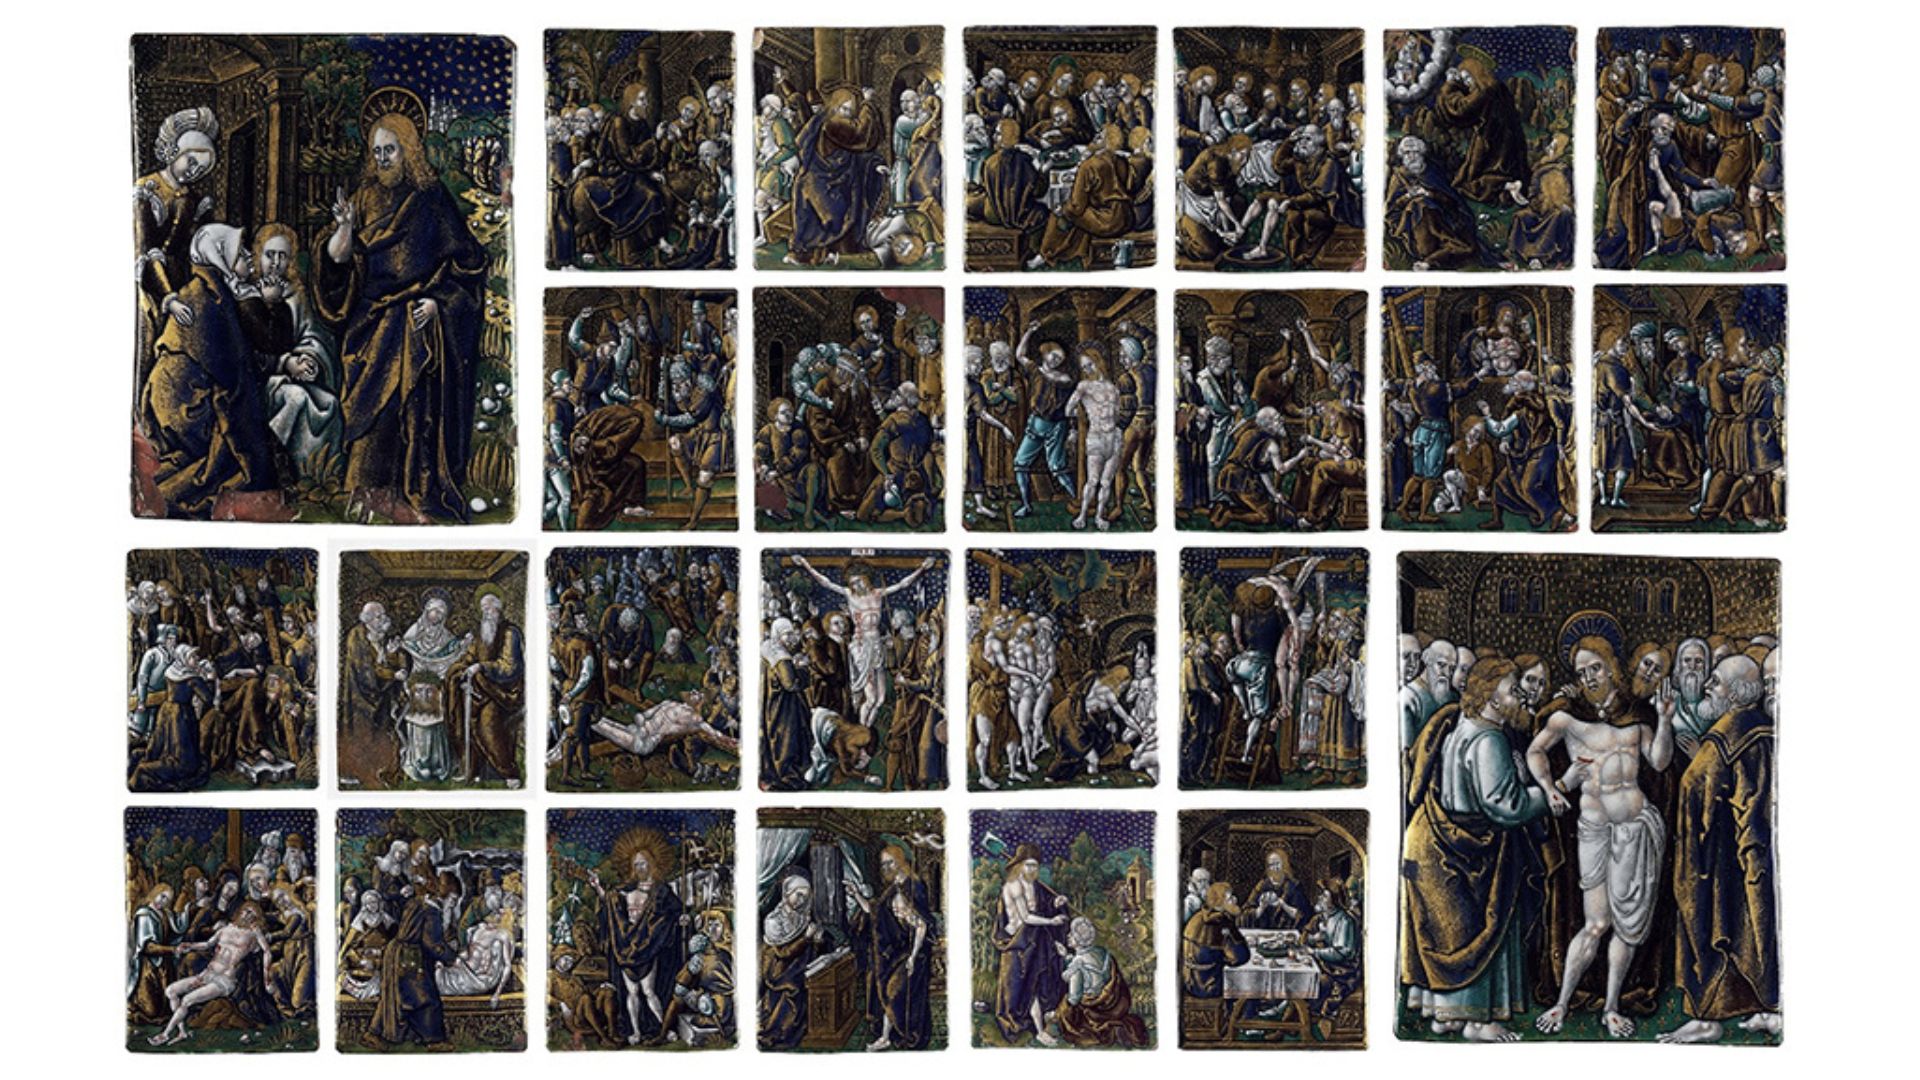 Série de 26 Placas em esmalte com cenas da Paixão de Cristo